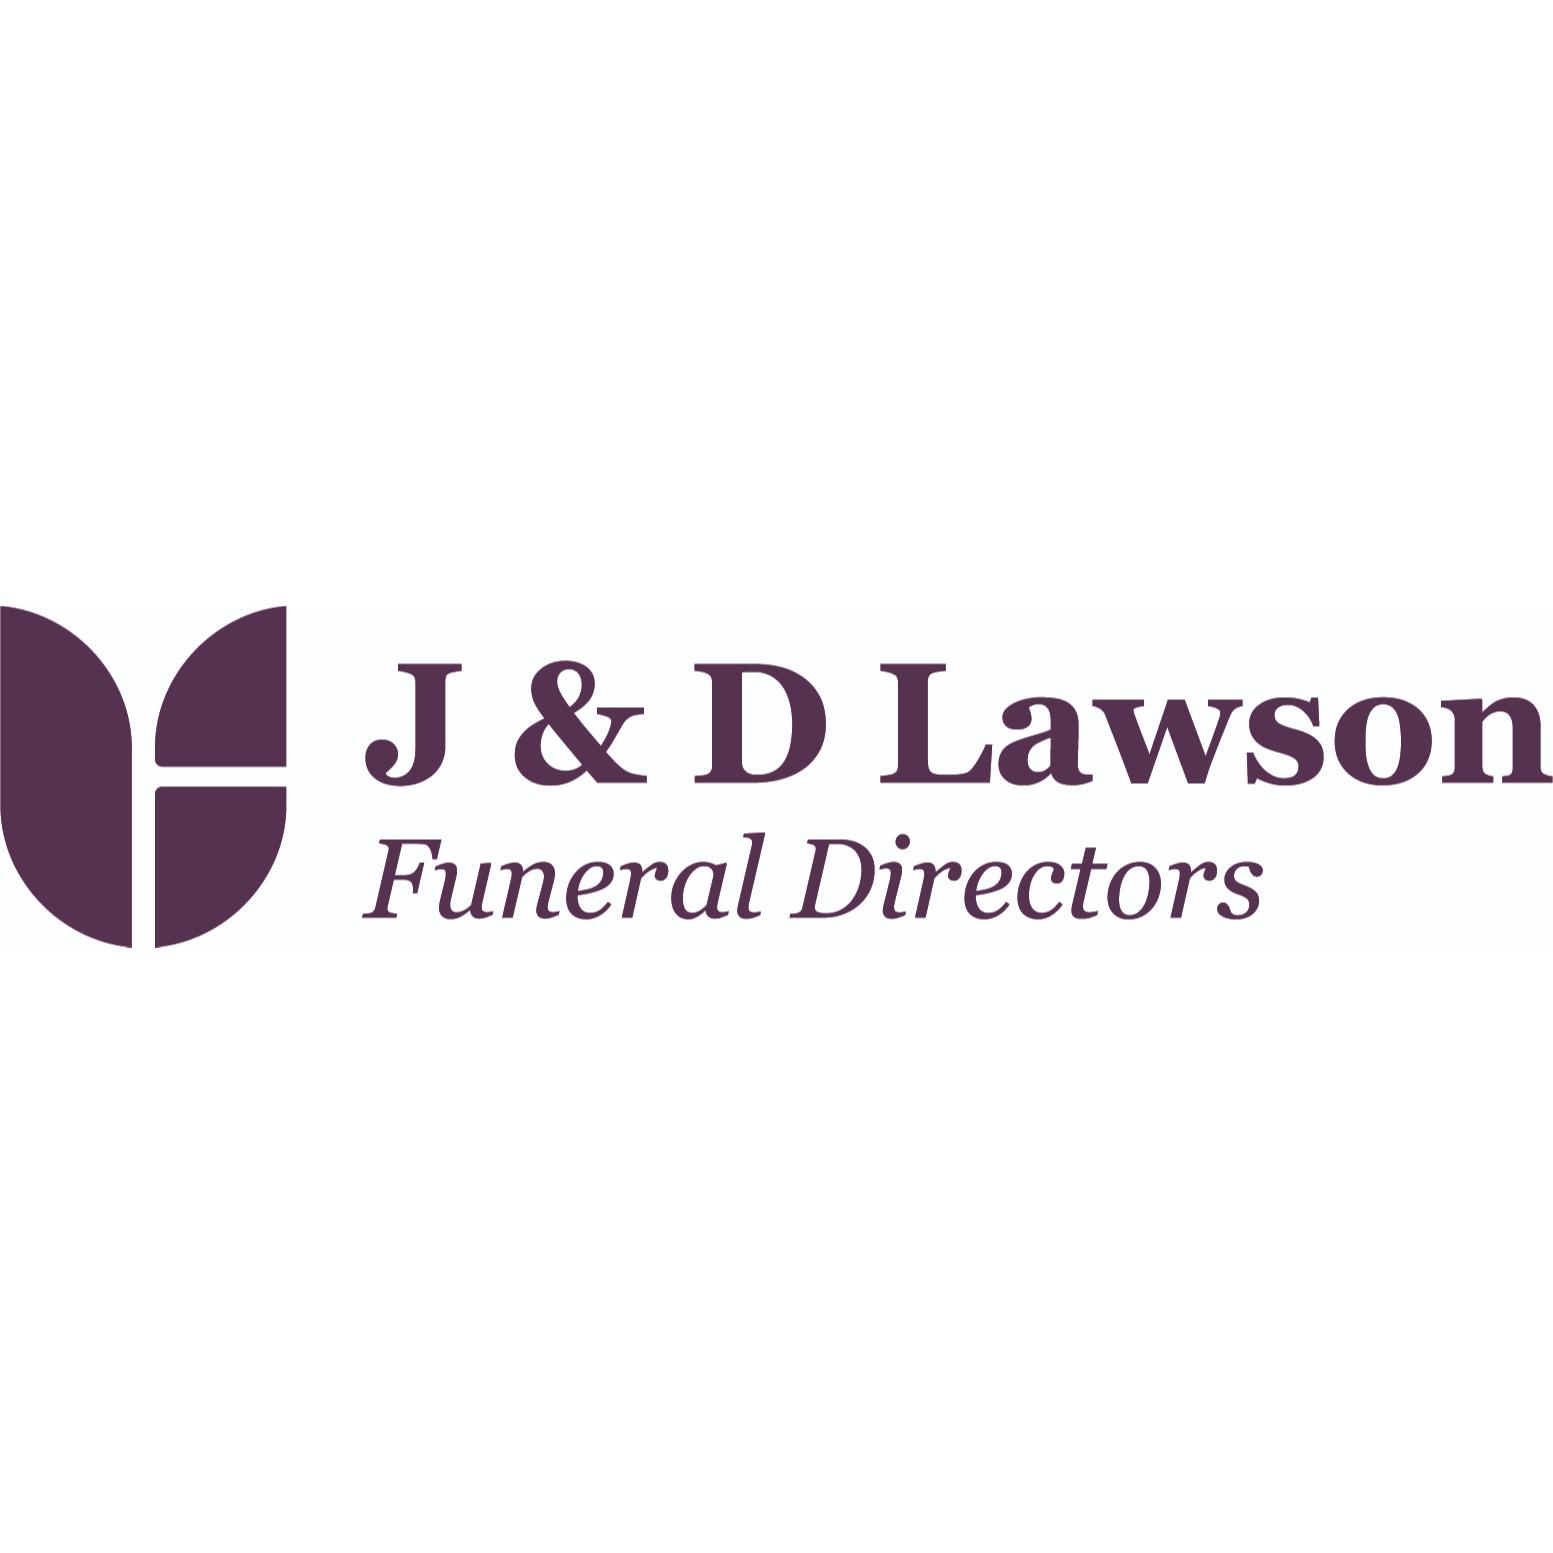 J & D Lawson Funeral Directors - Glasgow, Dunbartonshire G66 1QE - 01417 762242 | ShowMeLocal.com